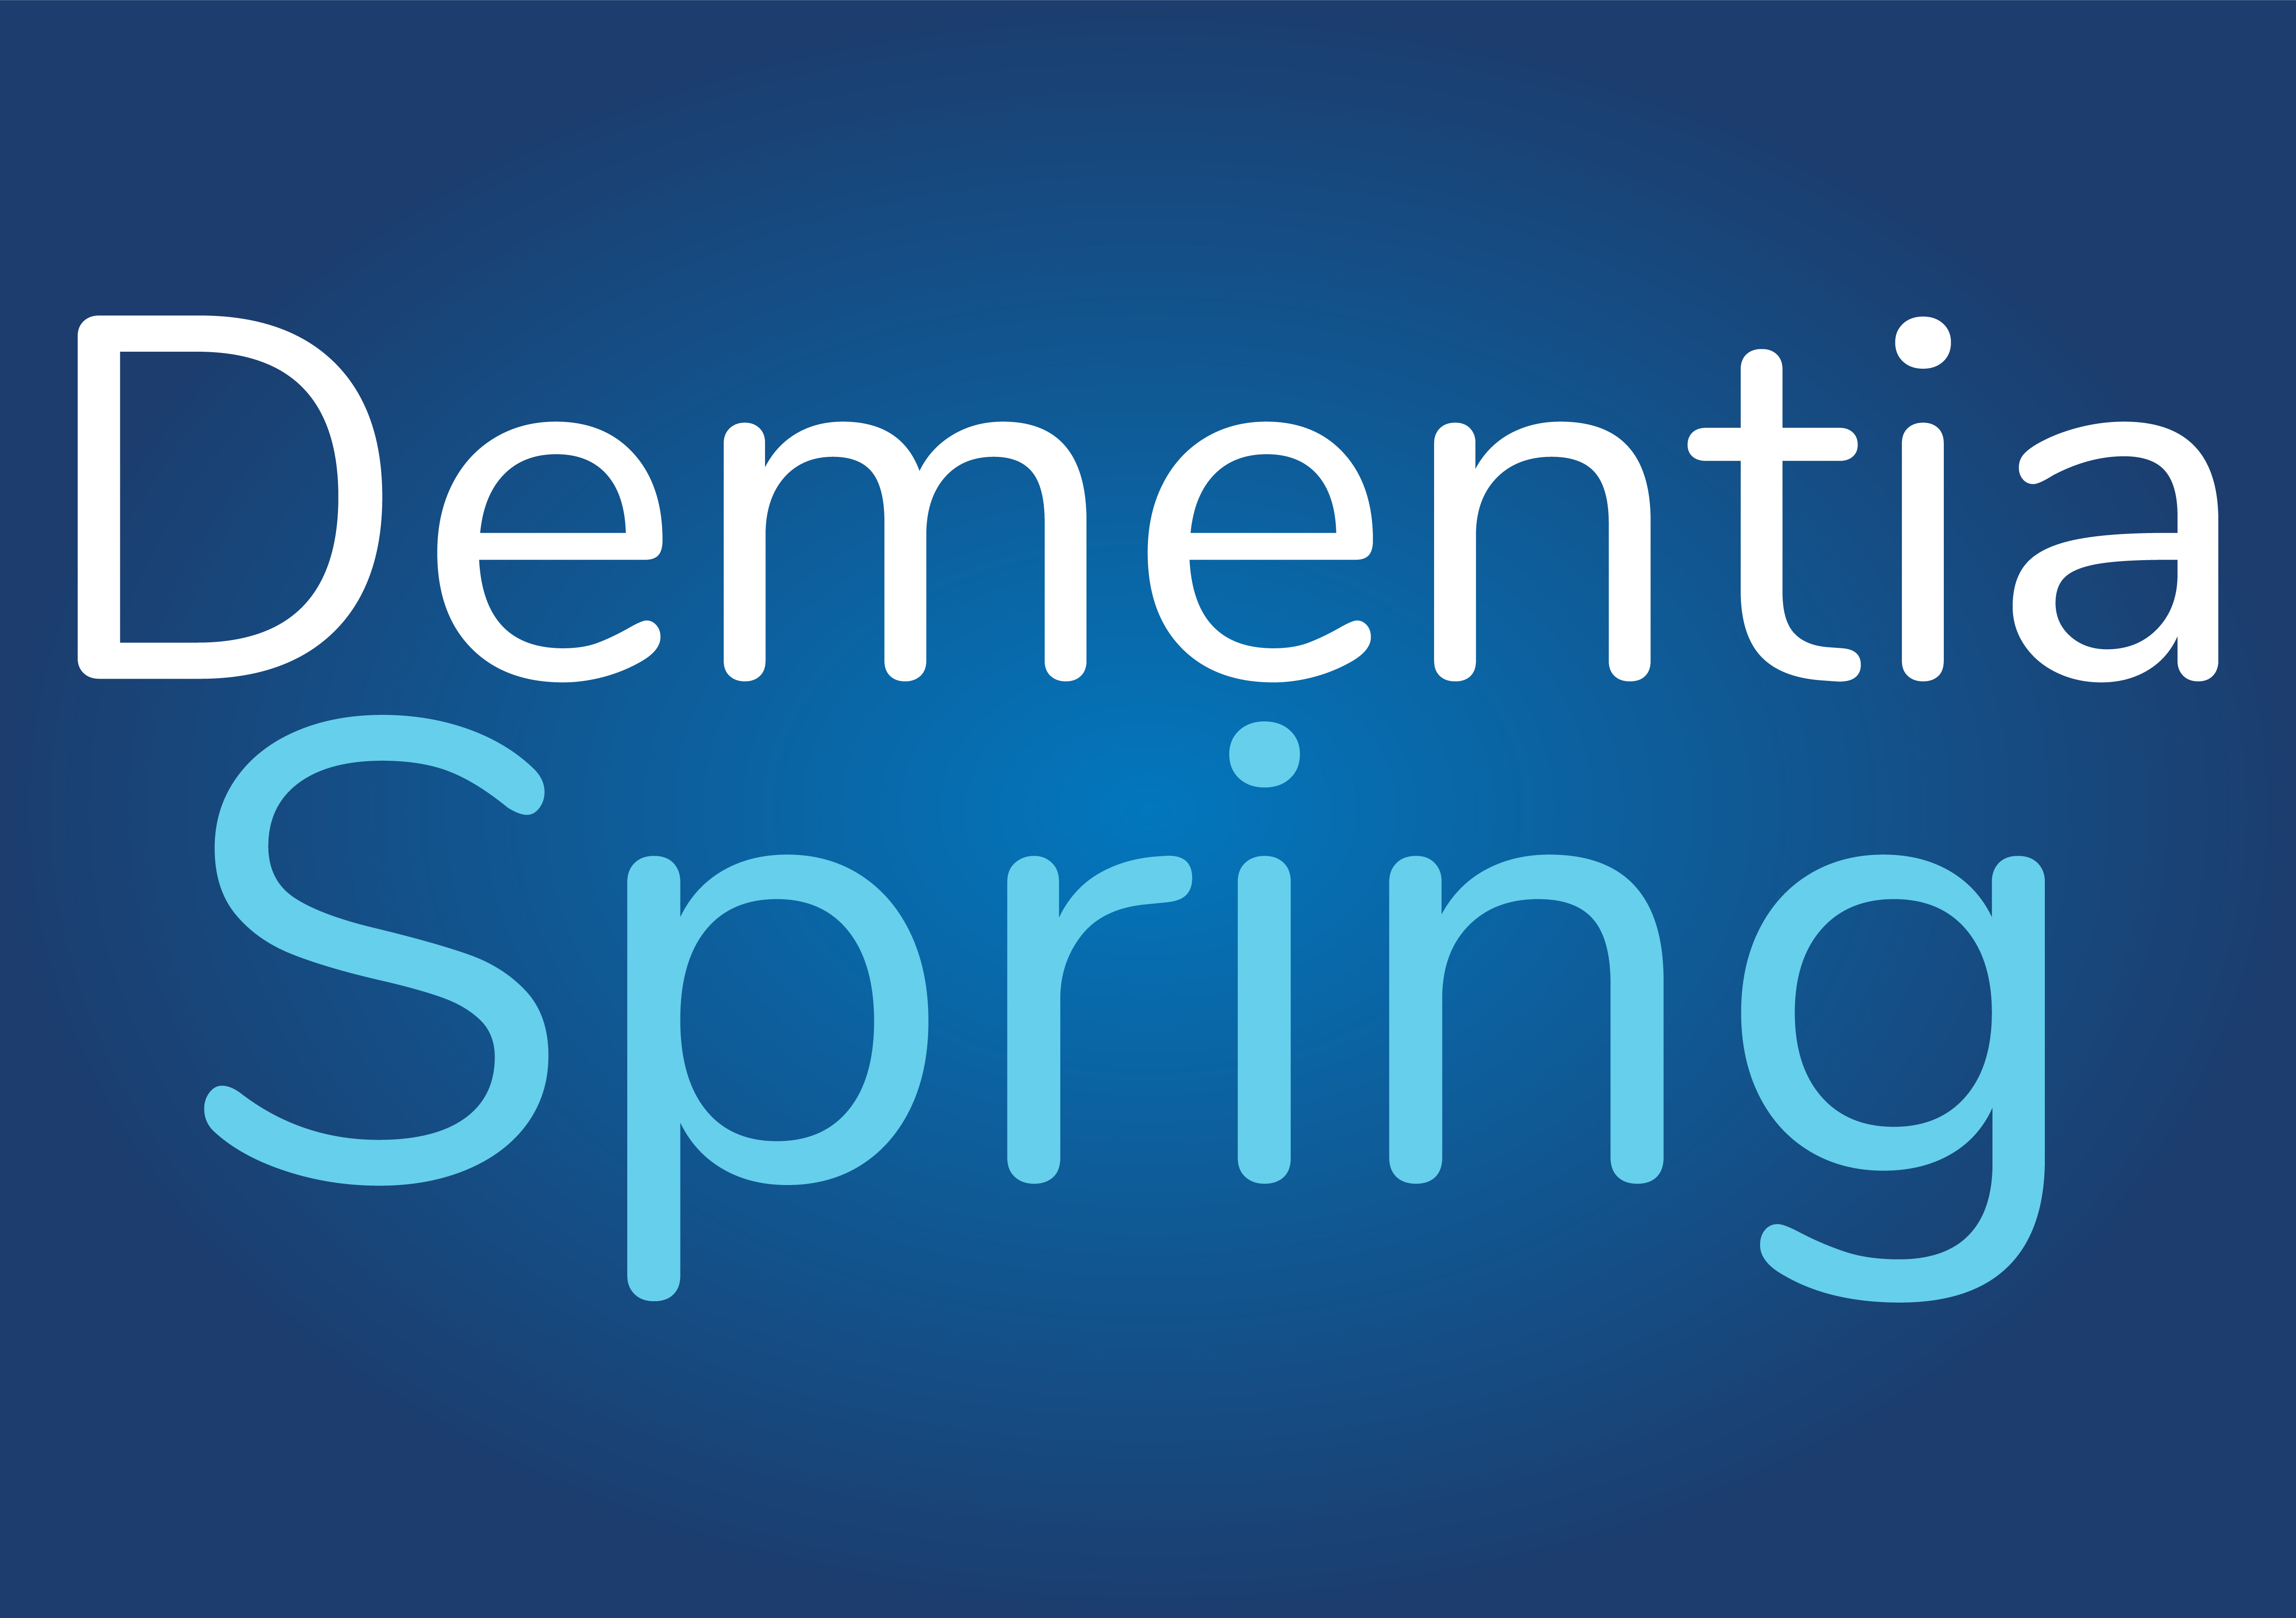 2. Primavera de demencia (Premier)